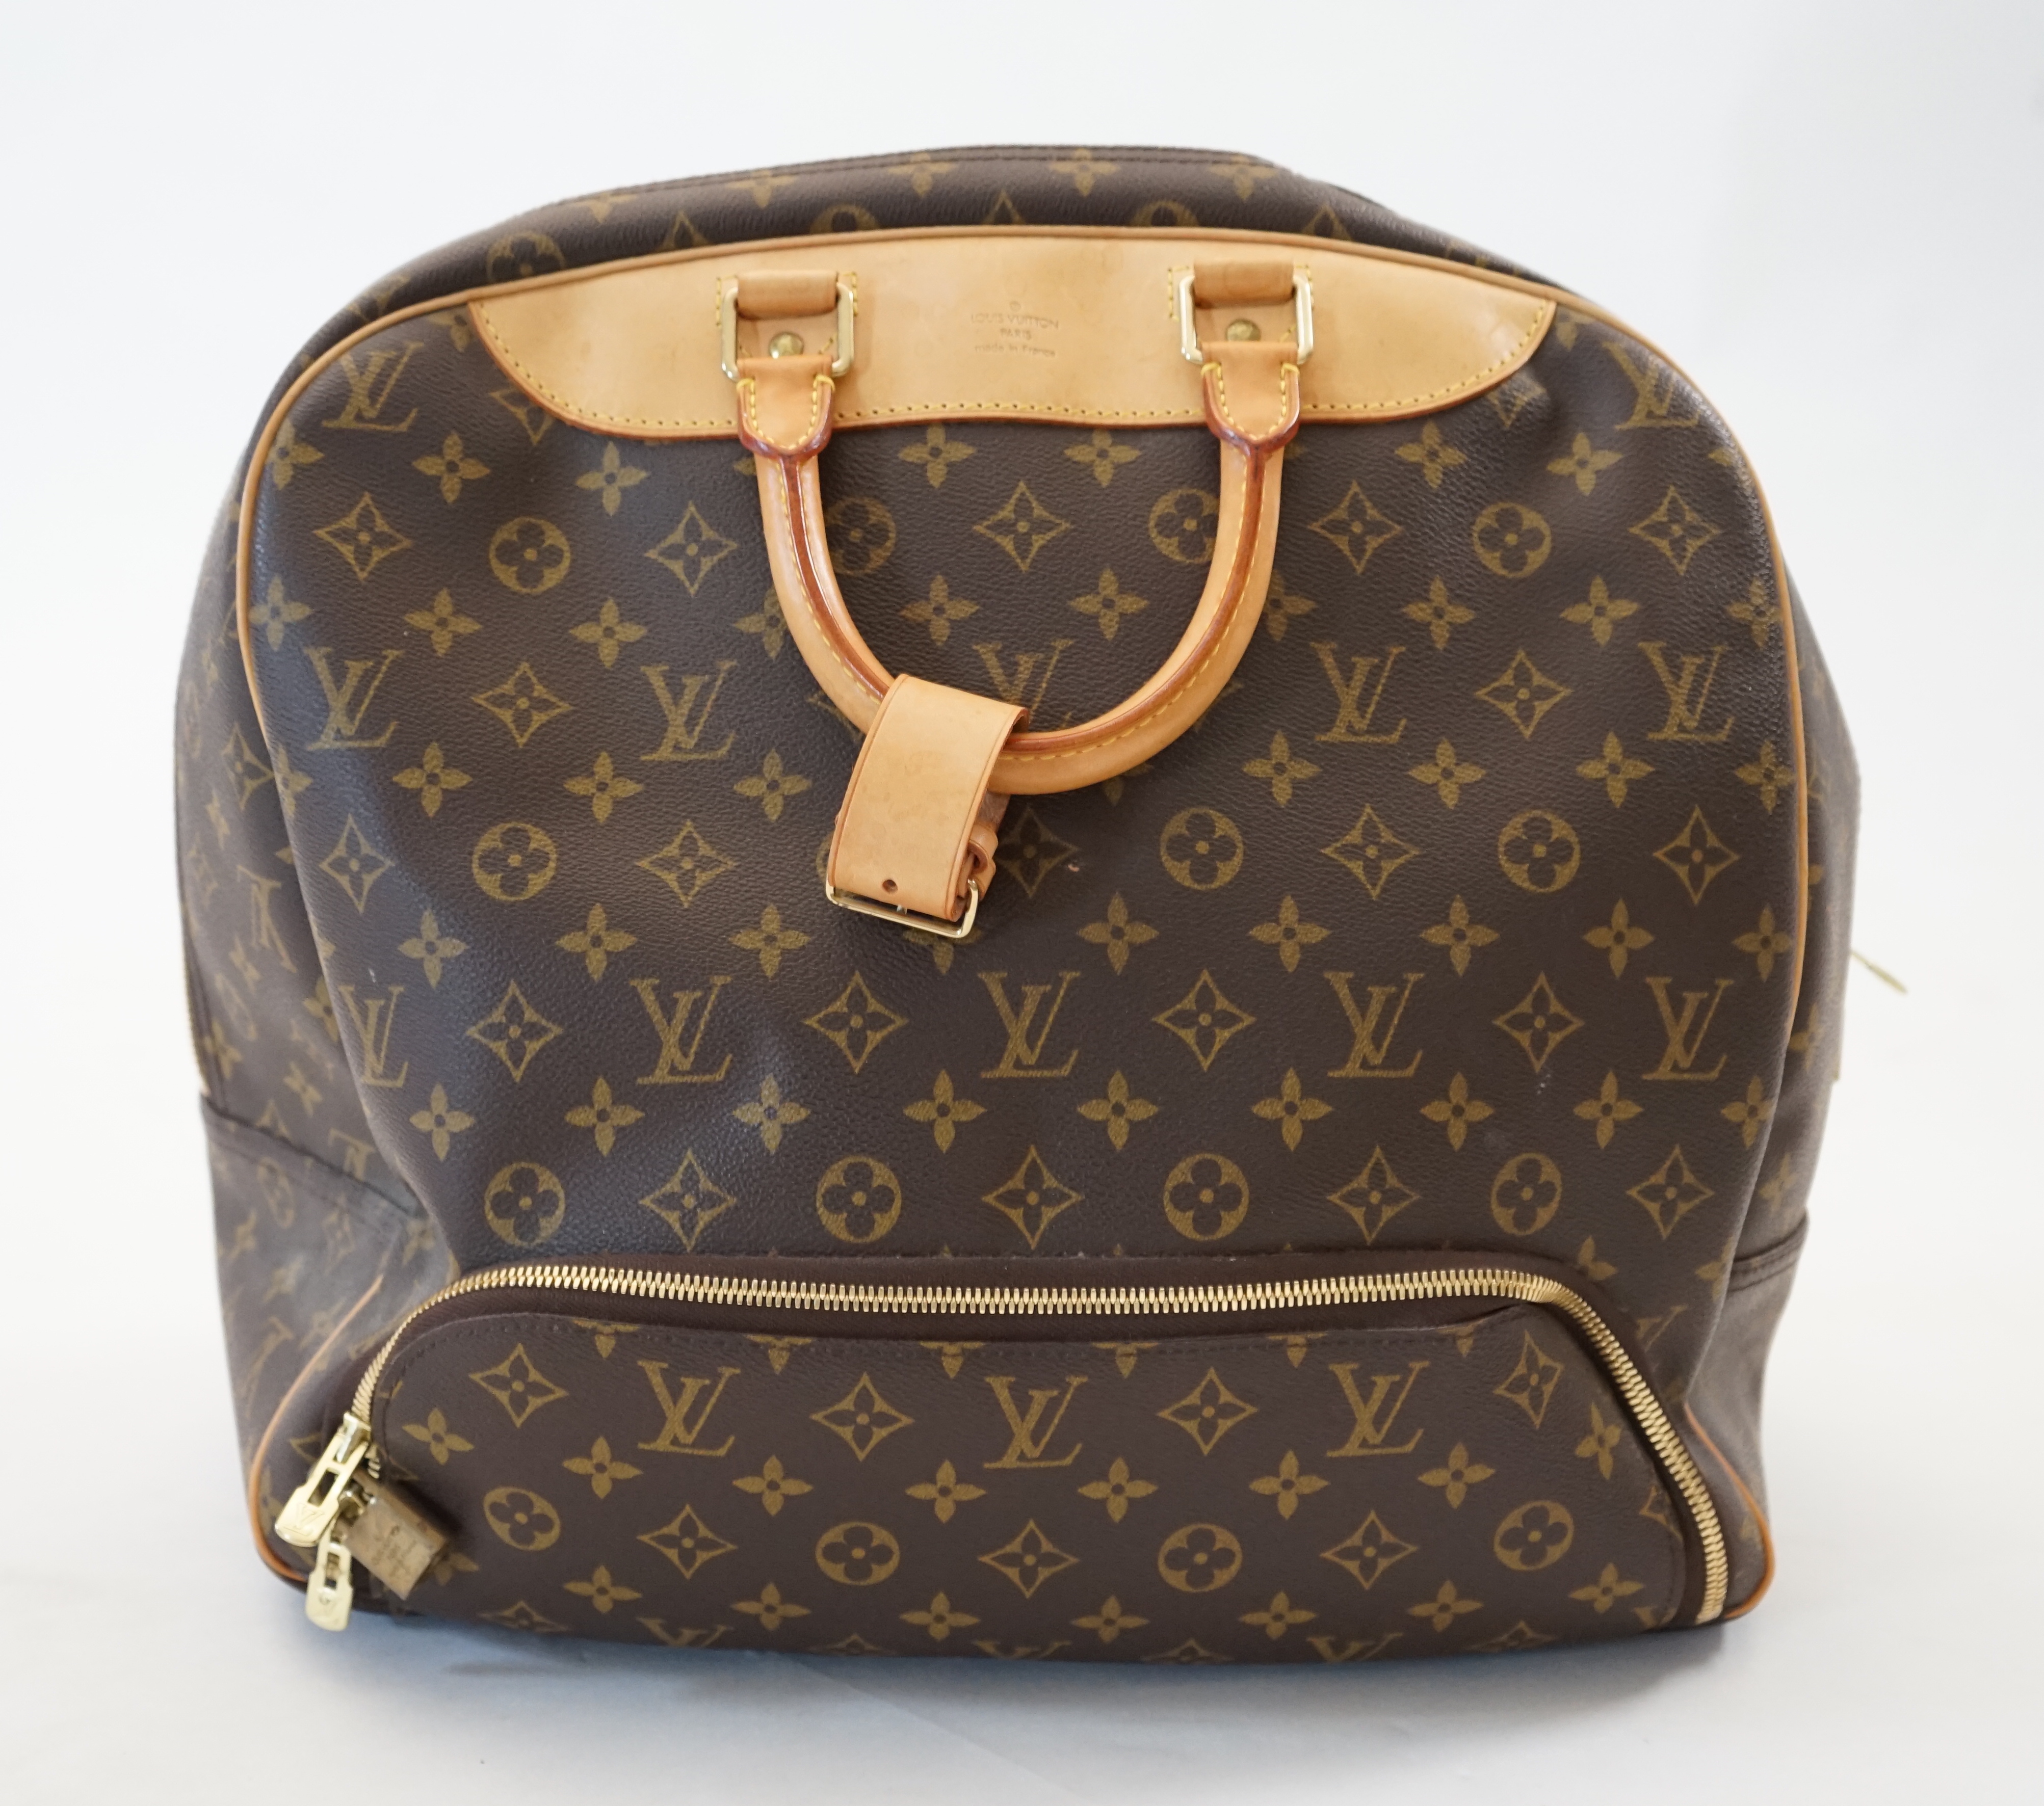 A Louis Vuitton Evasion travel bag width 38cm, depth 23cm, length 33cm, hand drop 12cm